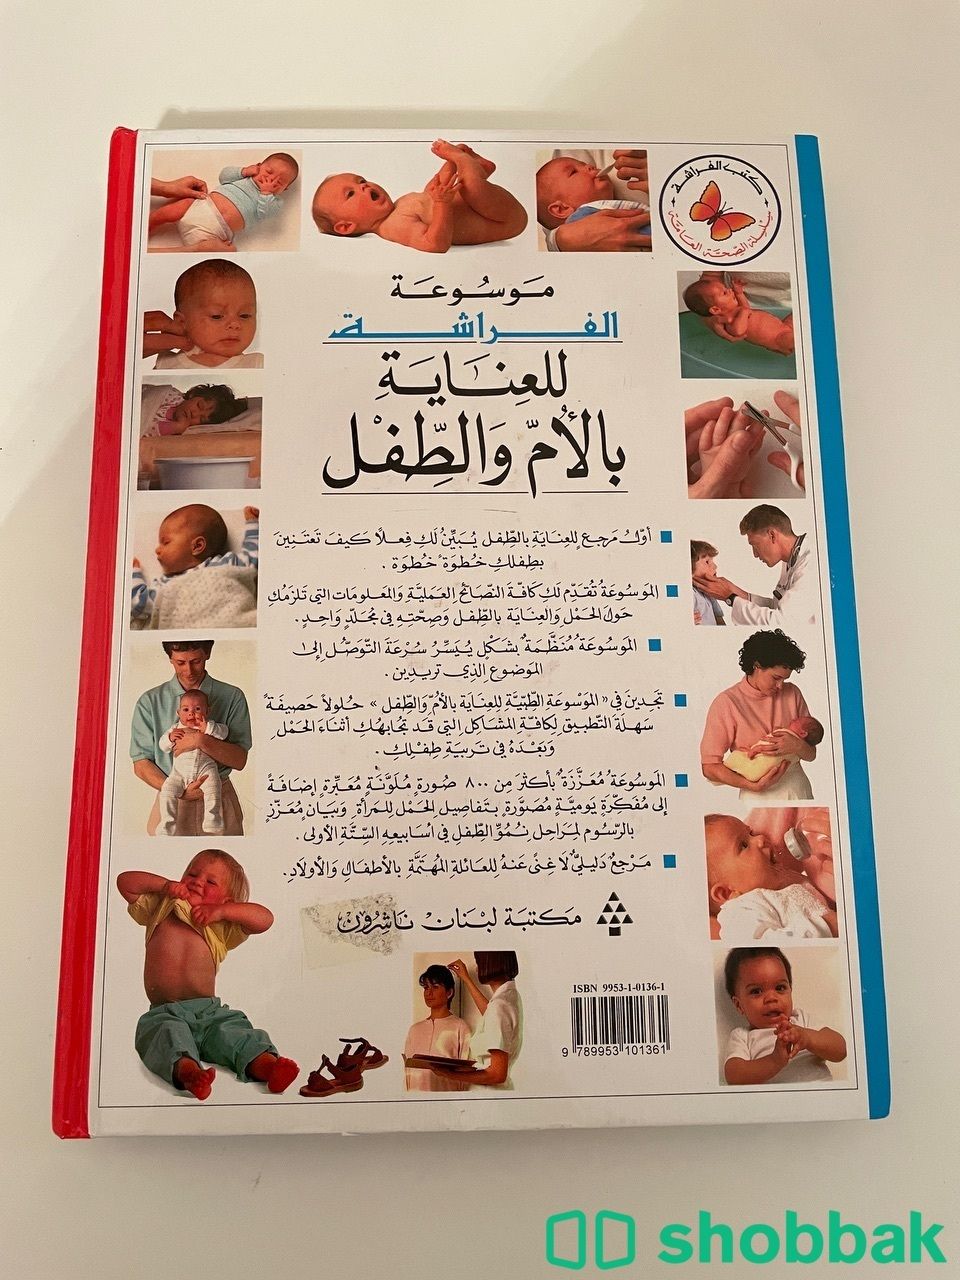 موسوعة الفراشة للعناية بالأم والطفل Shobbak Saudi Arabia